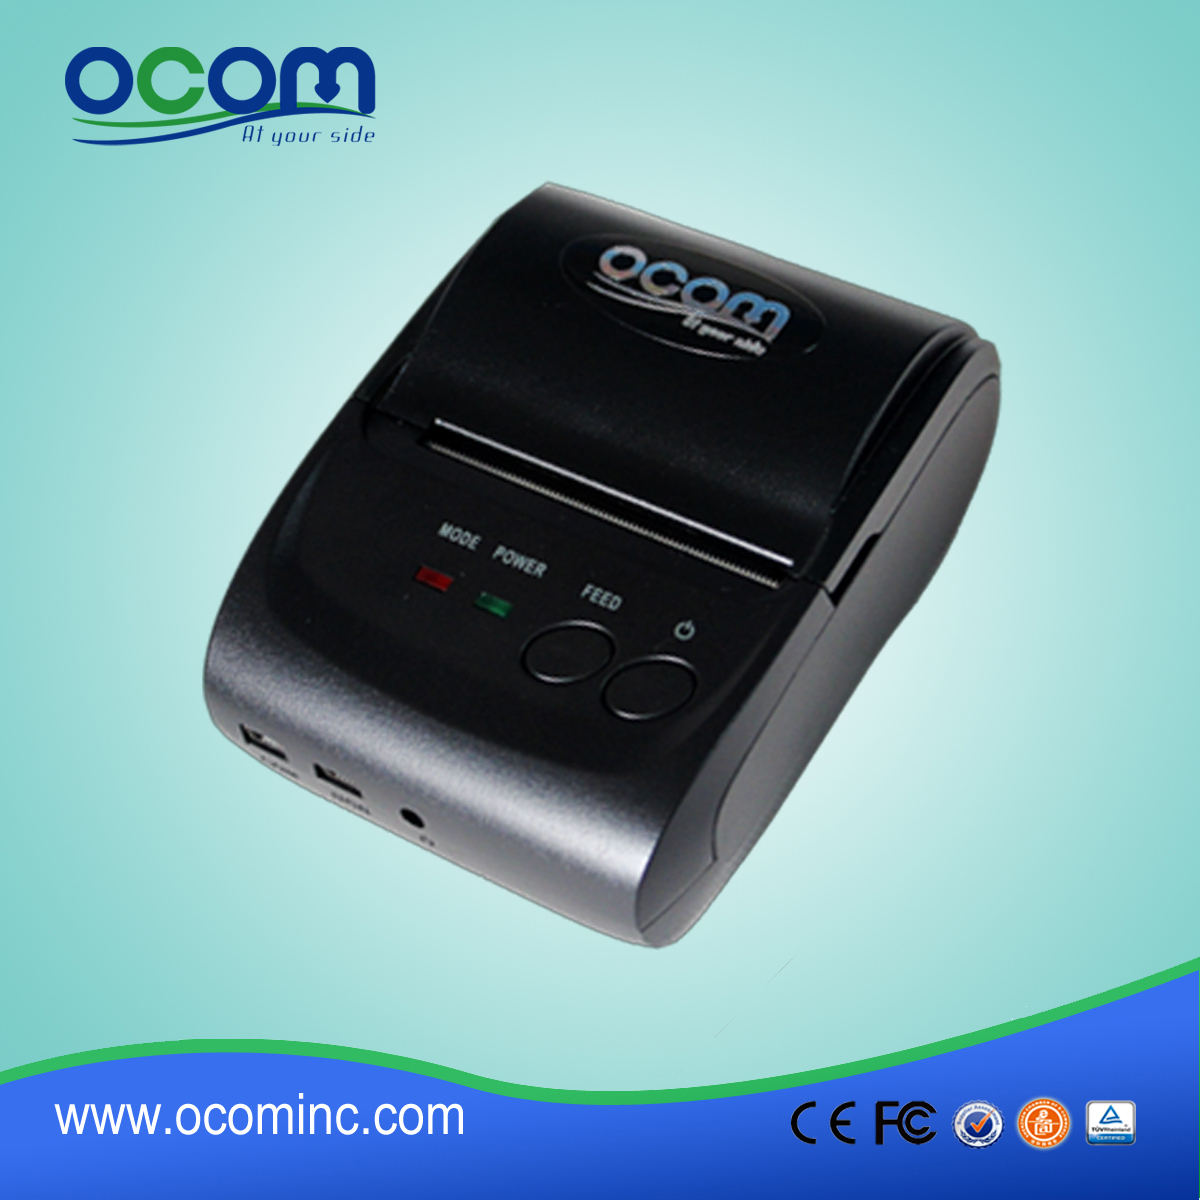 2 ιντσών νομοσχέδιο εκτυπωτή θερμικό εκτυπωτή (OCPP-M05)